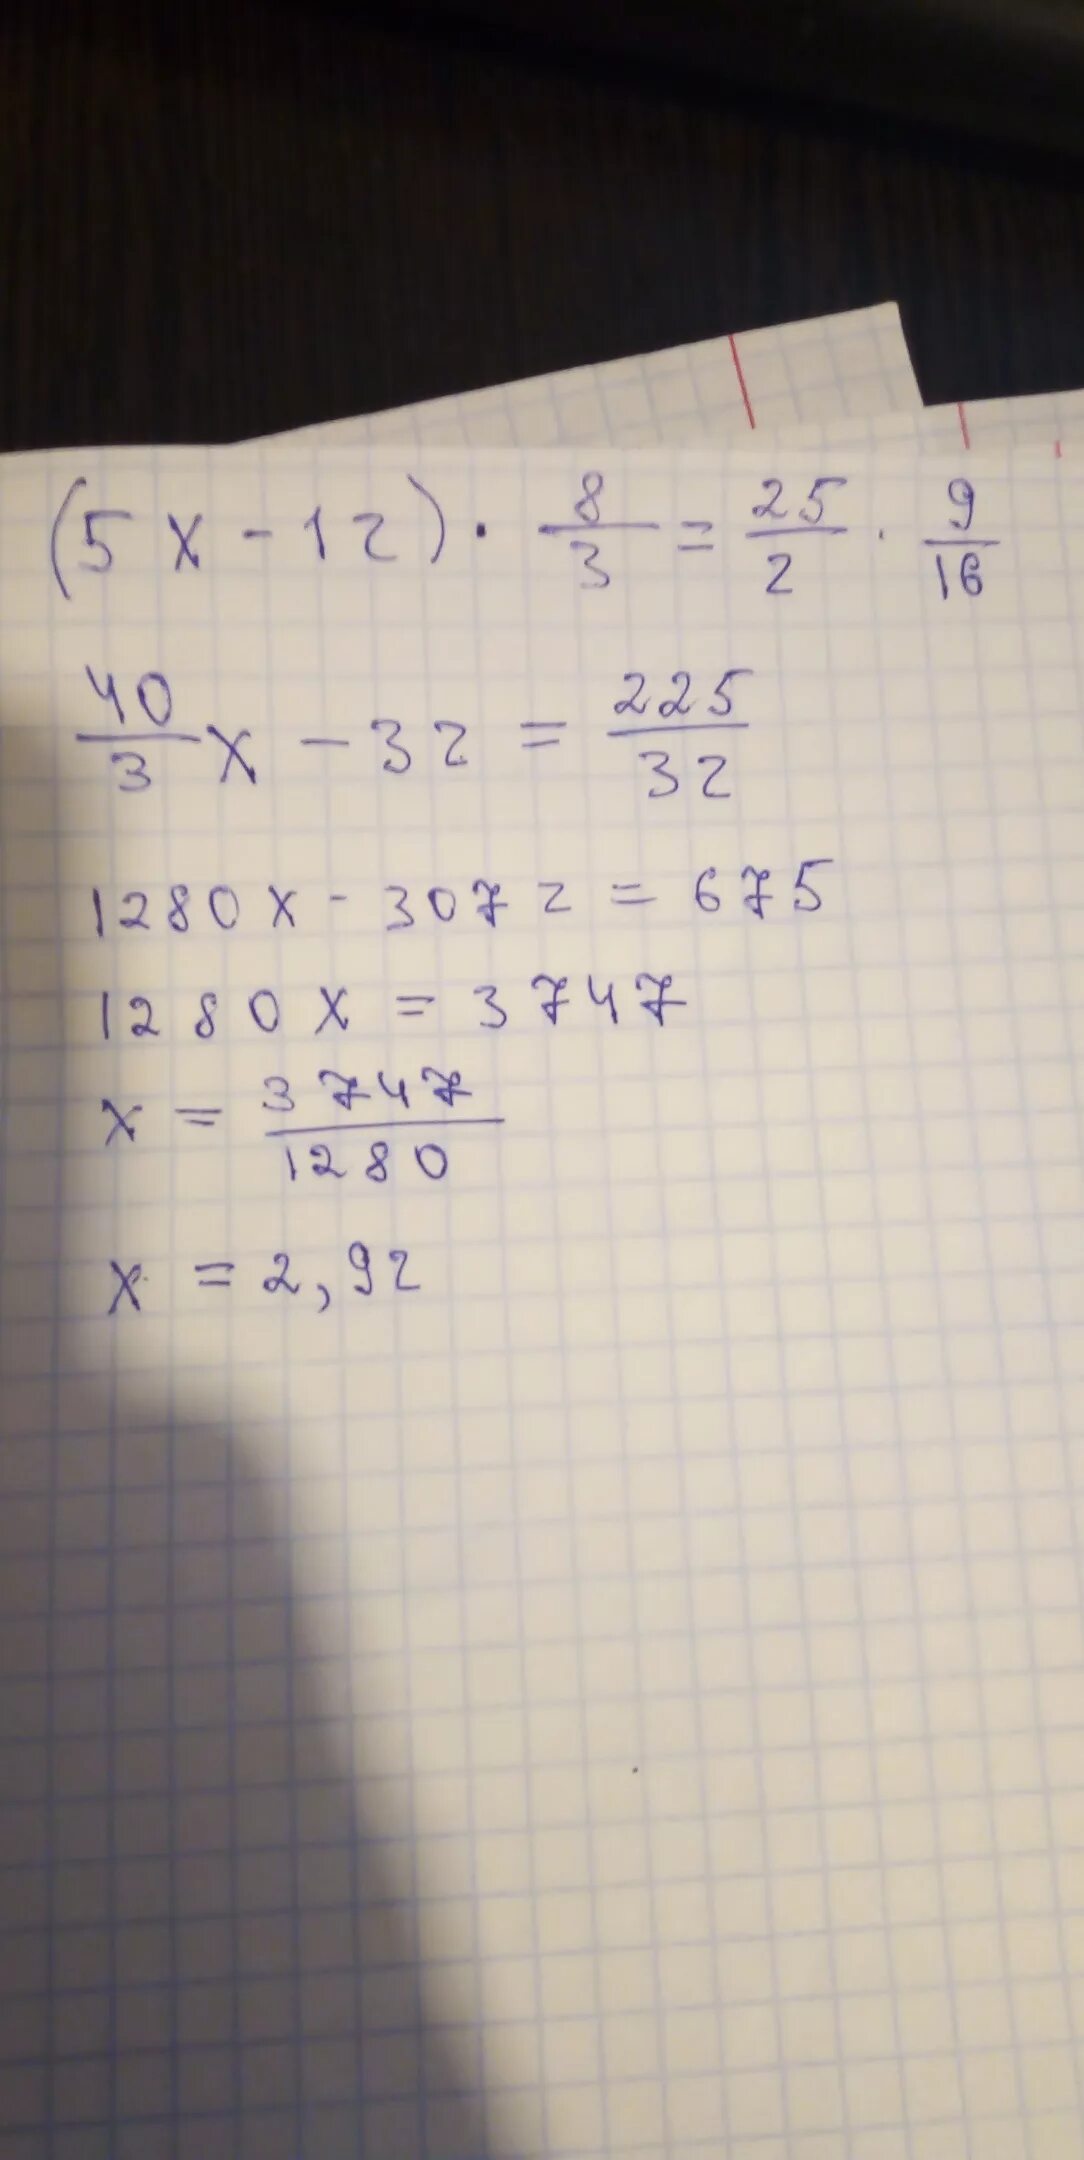 1 3 9 16 решение. 12/Х+5 -12/5. 8 9 16. (Х+3,16)÷2,8=5,2. 9/16 3/4 Минус 3/8.